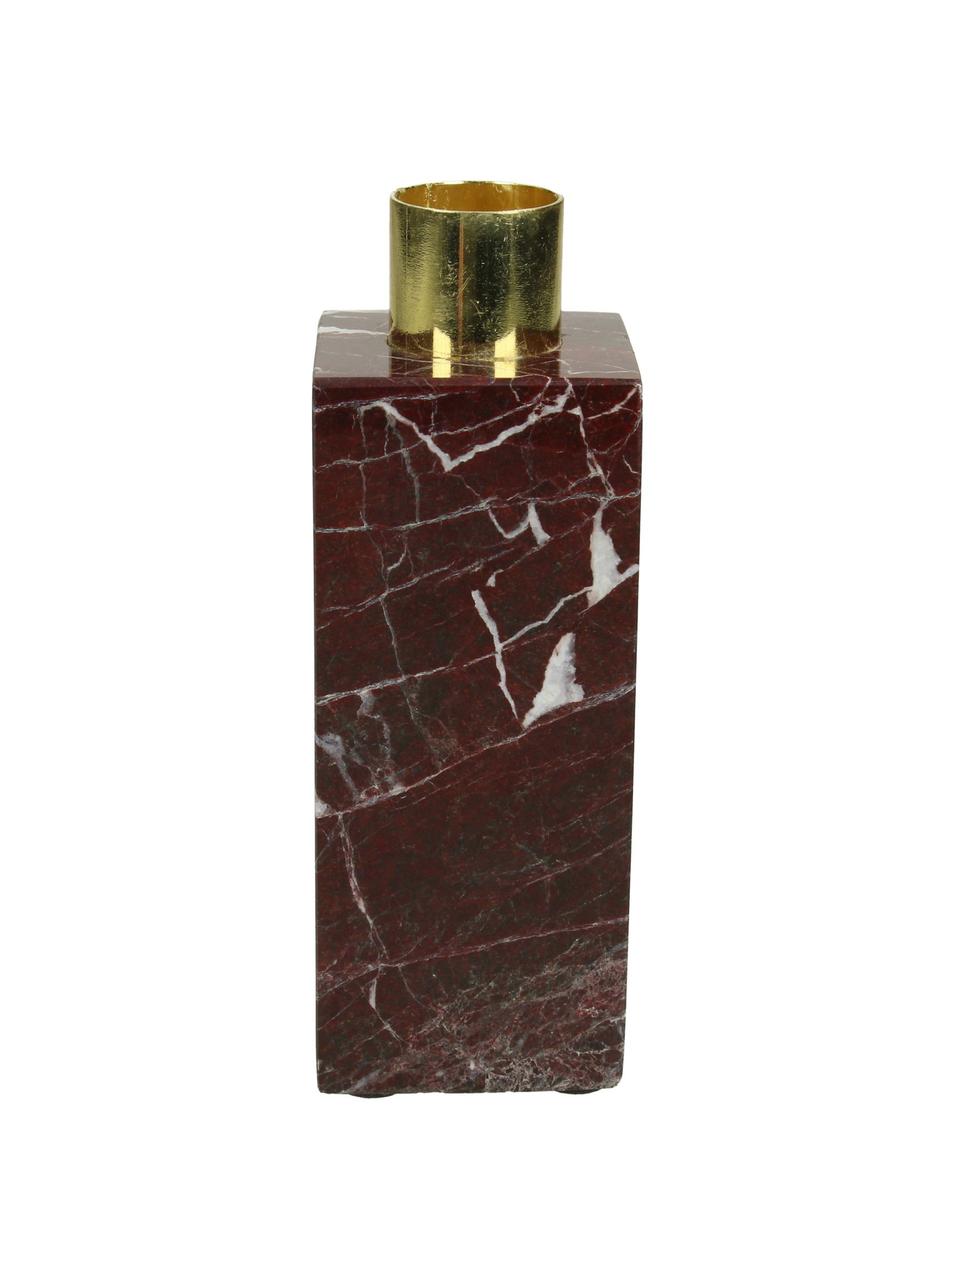 Marmor-Kerzenhalter Maria, Kerzenhalter: Aluminium, beschichtet, Rot, B 5 x H 13 cm